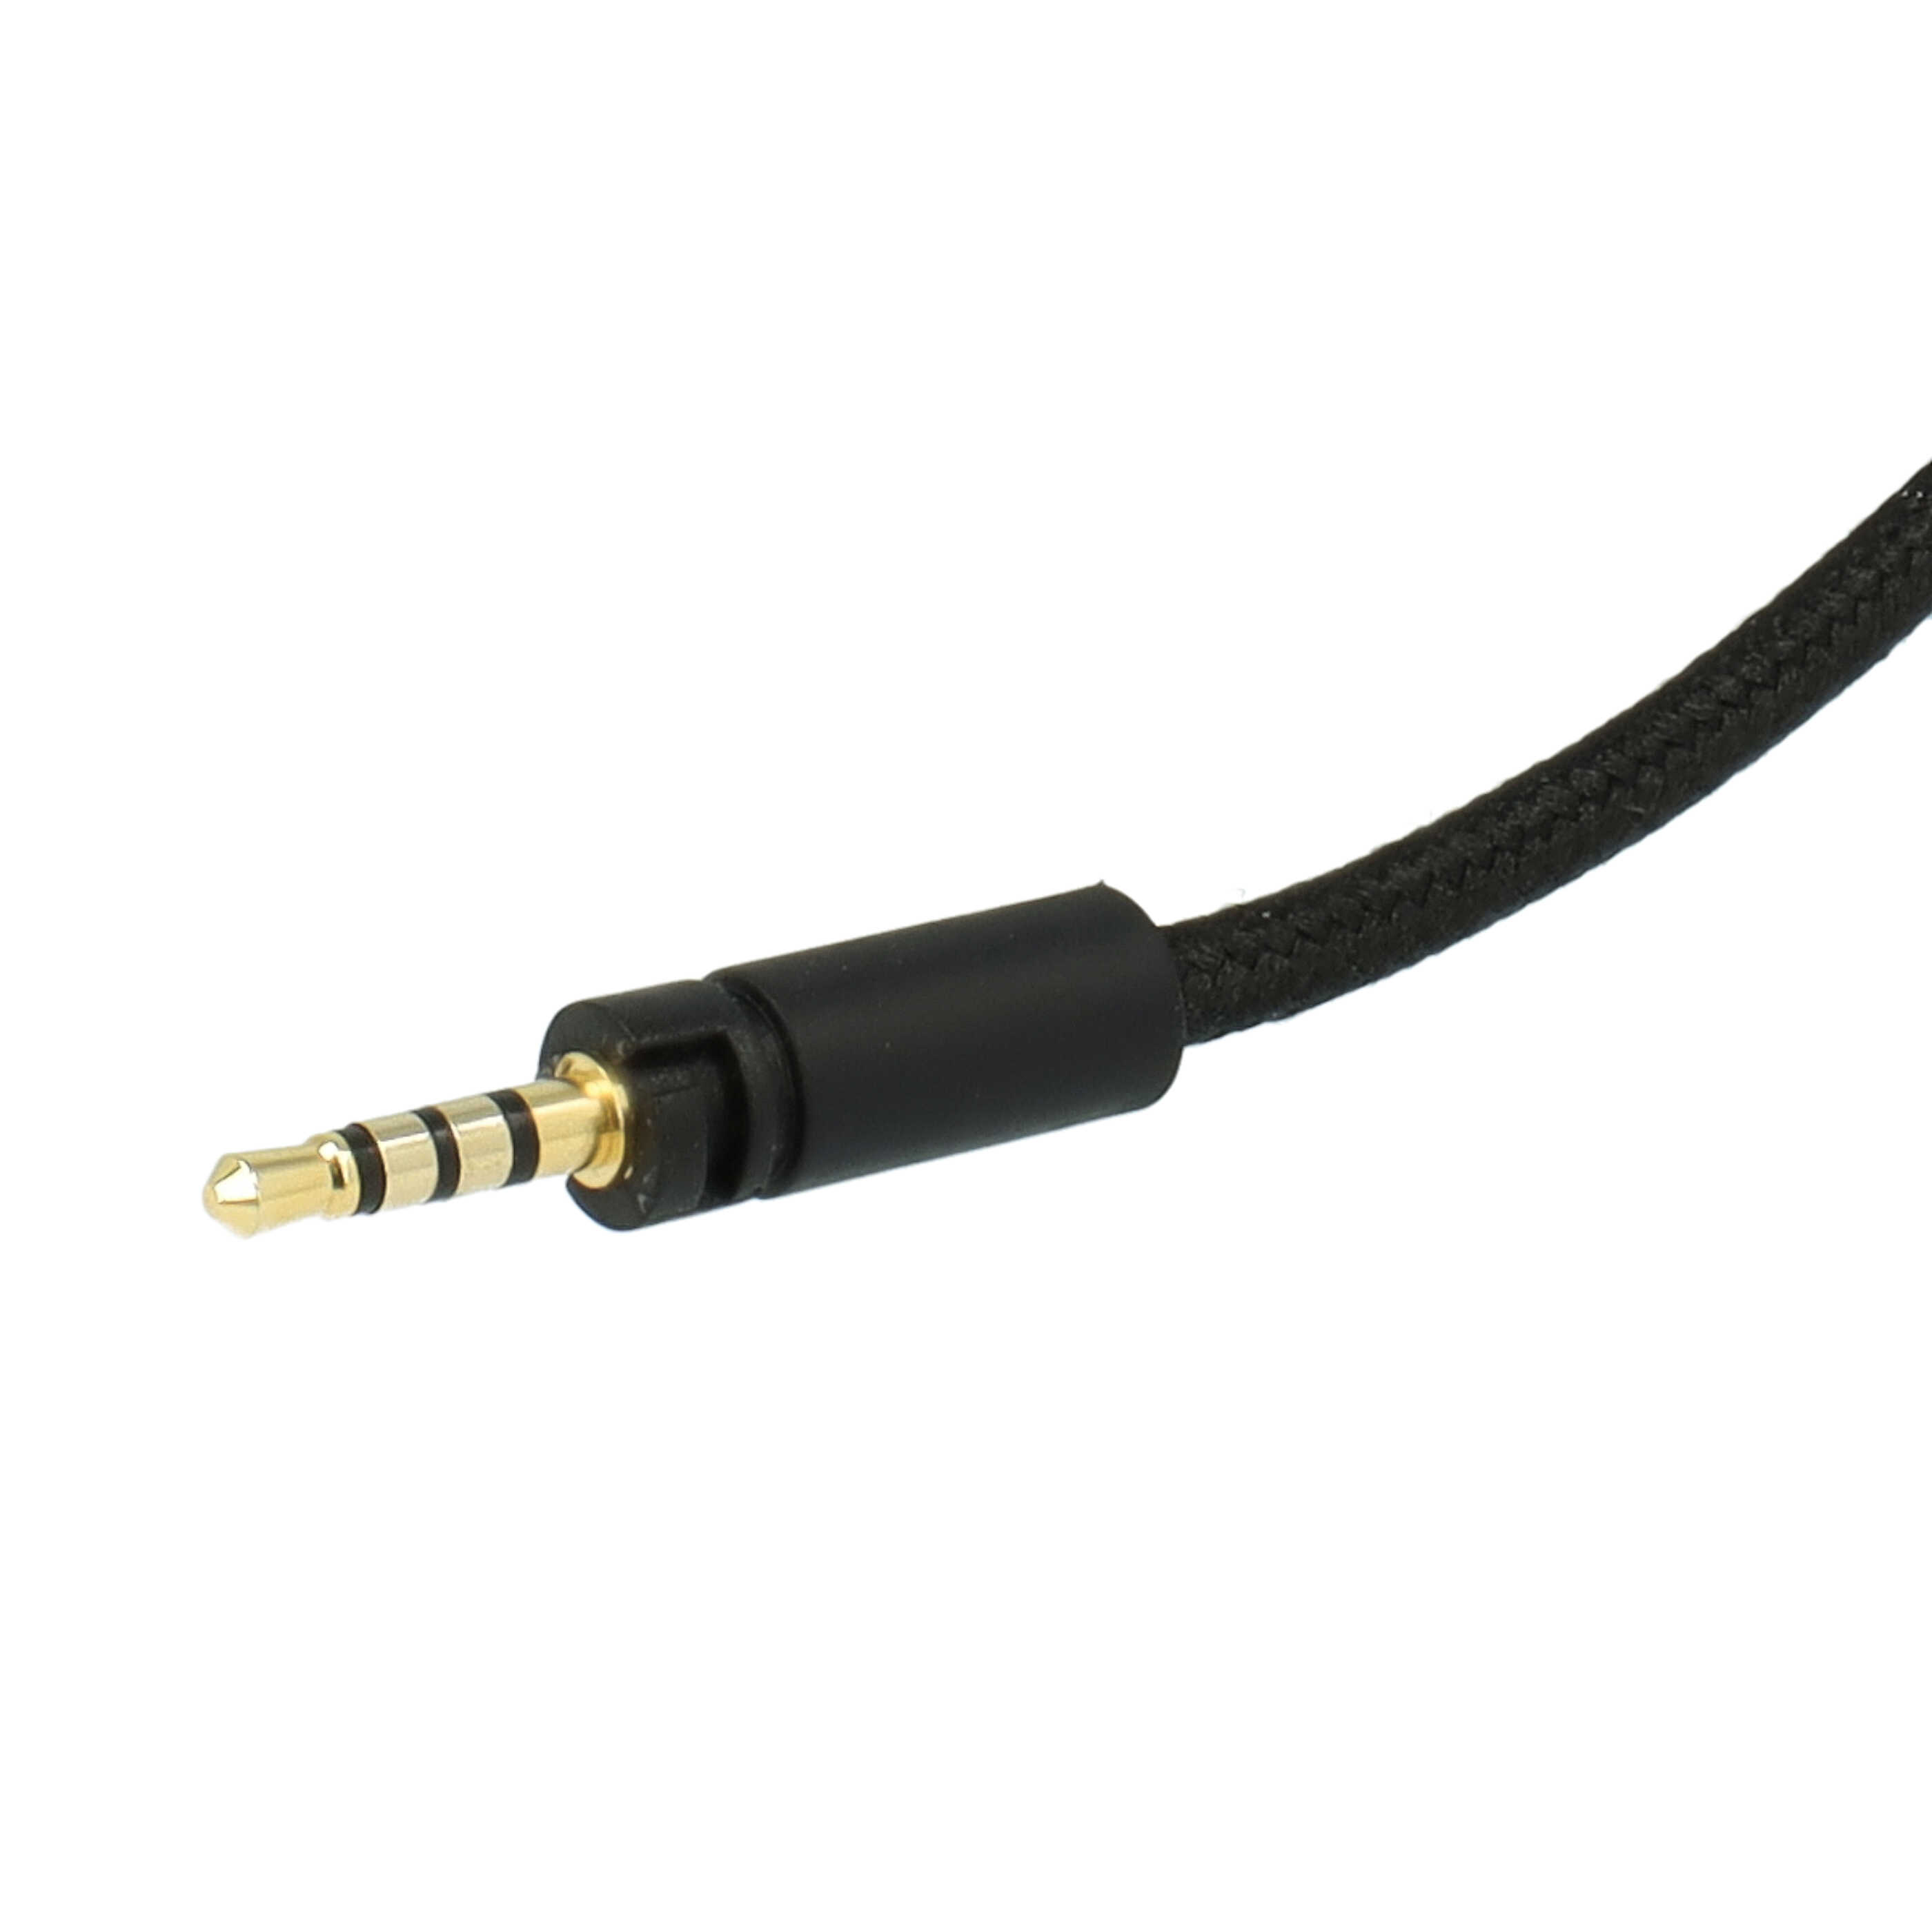 Kopfhörer Kabel als Ersatz für Sennheiser 564549 für Sennheiser , 120 cm, schwarz